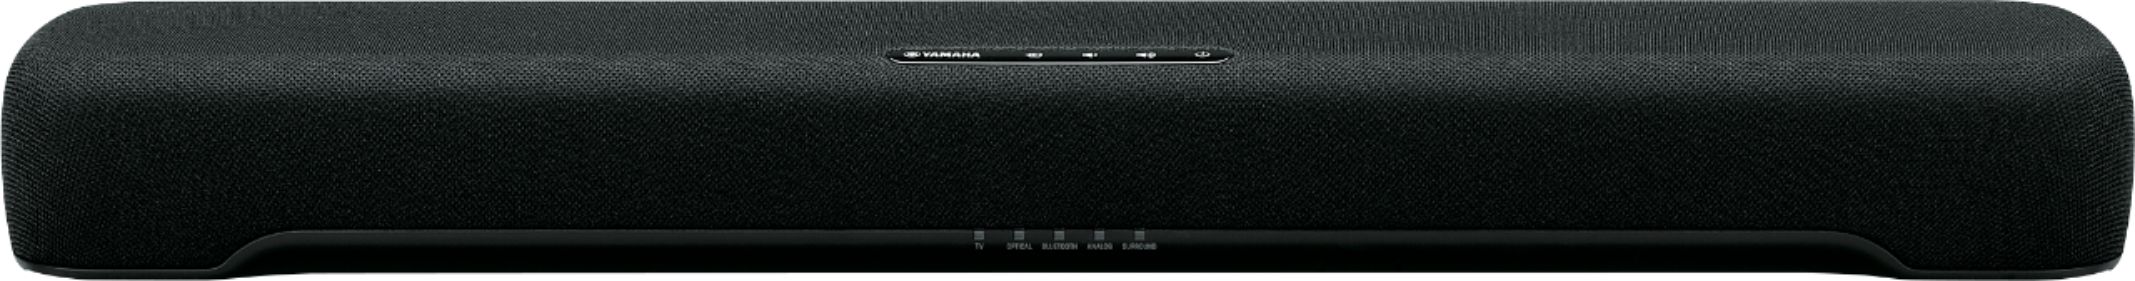 Yamaha SR-C20ABL 2.1-Channel Soundbar with Built-in Subwoofer